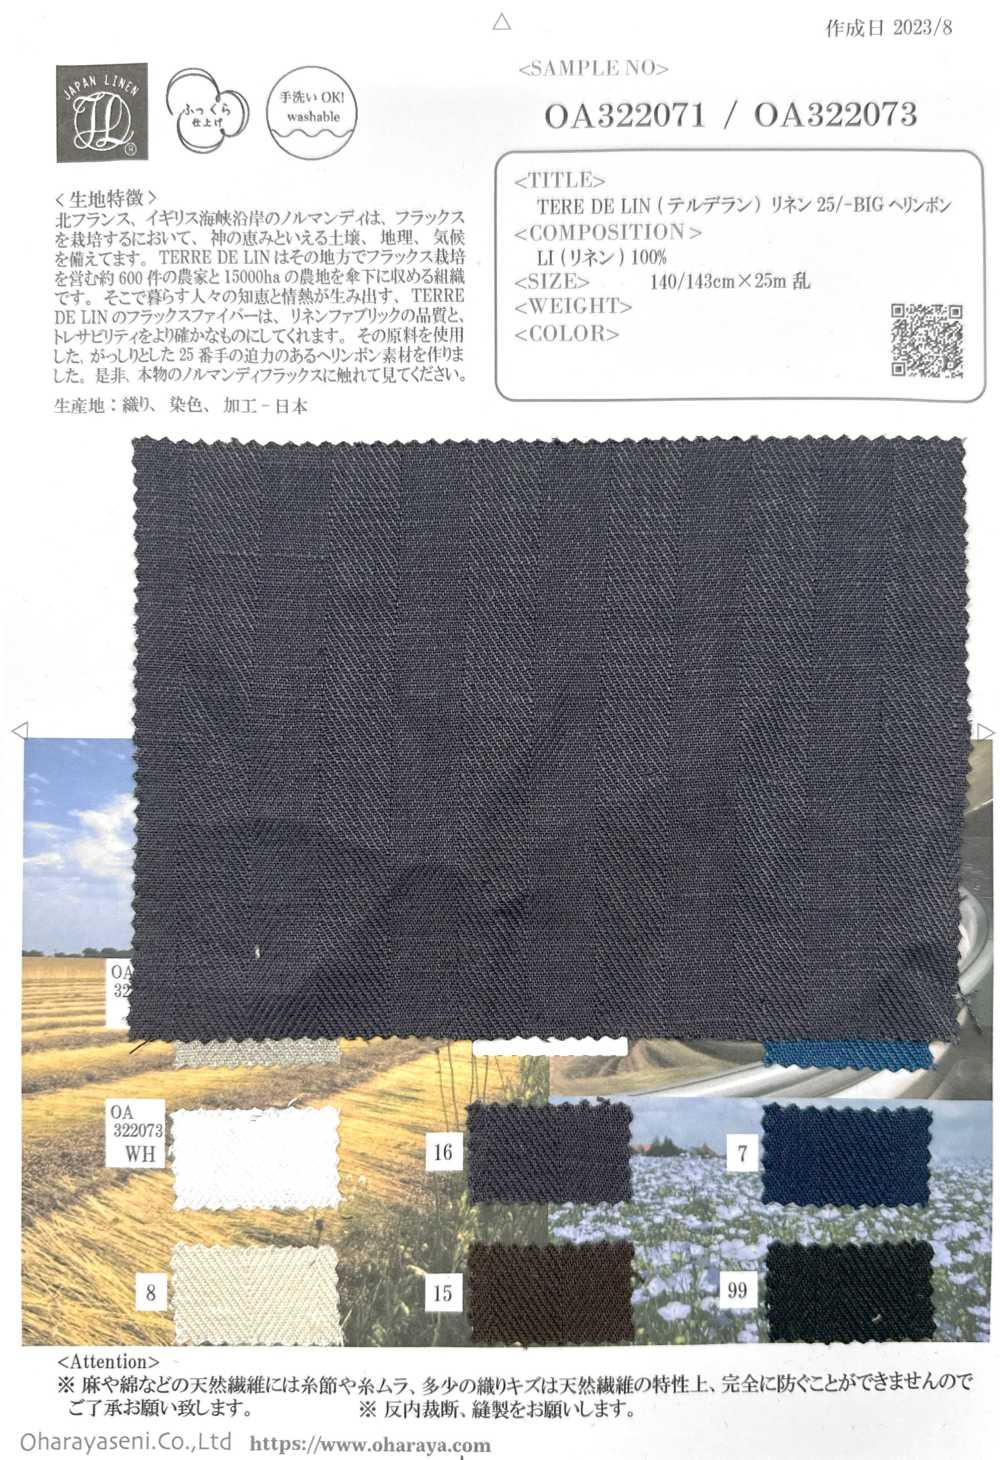 OA322071 TERE DE LIN Lin 25/-GROS Chevrons[Fabrication De Textile] Oharayaseni